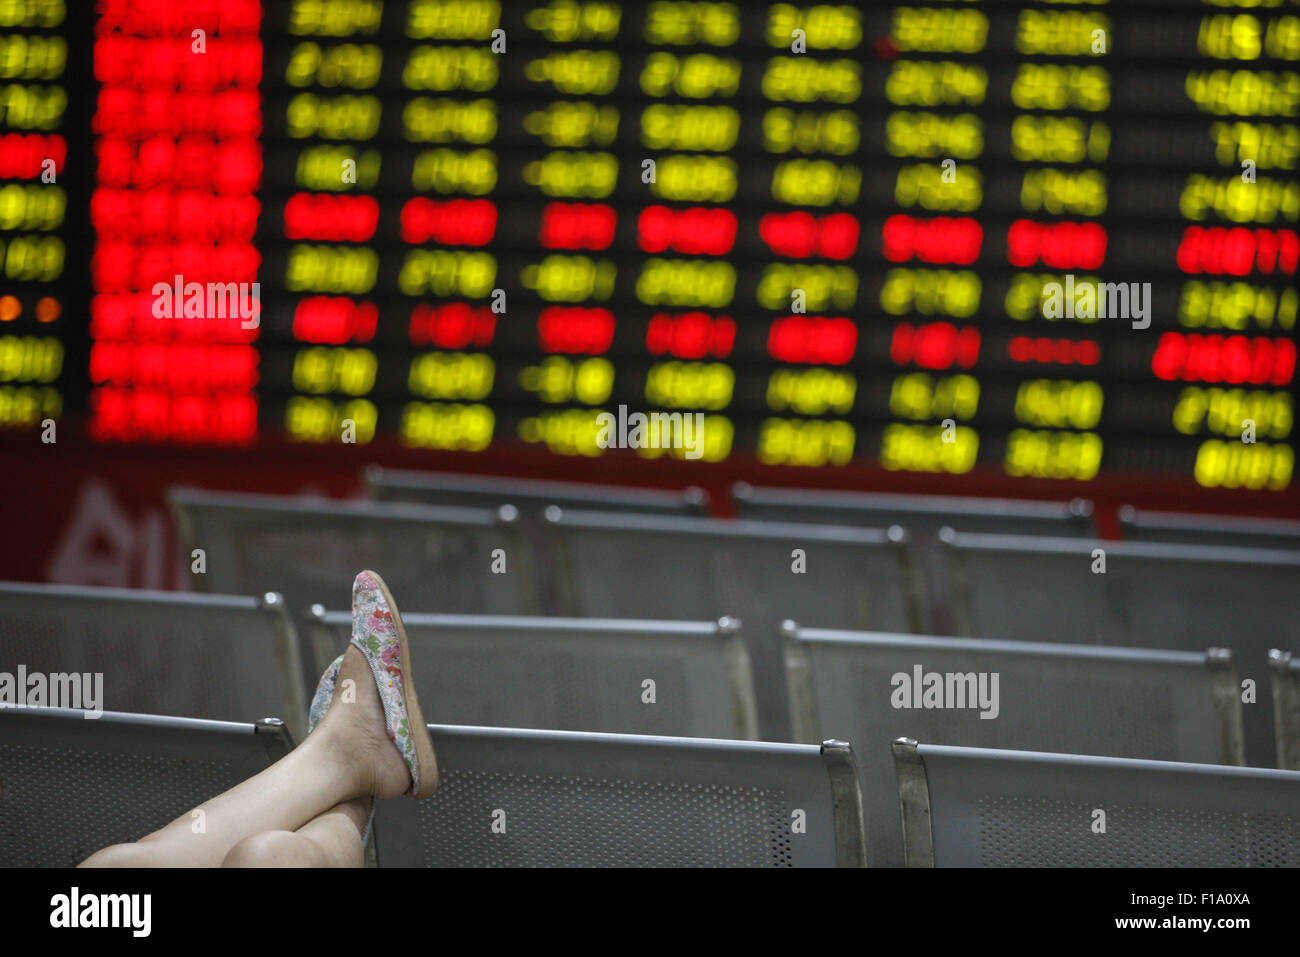 Shanghai, Cina. 31 Agosto, 2015. Un investitore orologi eclettica monitor presso una borsa in Huaibei, provincia di Anhui in Cina il 31 agosto 2015.Il Shanghai Composite Index è sceso 0,8 percento a 3,205.99 presso il vicino, girando una perdita di quanto 3.8 percento. Il blue-chip CSI300 index .CSI300 è riuscito ad artigliare torna in territorio positivo in commercio in ritardo, finendo 0,7 percento a punti 3,366.54. Entrambi gli indici sparso intorno al 12 per cento per il mese, la loro terza diminuzione mensile e hanno perso quasi il 40 per cento del loro valore a partire dalla metà di giugno. Credito: CPRESS FOTO LIMITATA/Alamy Live News Foto Stock